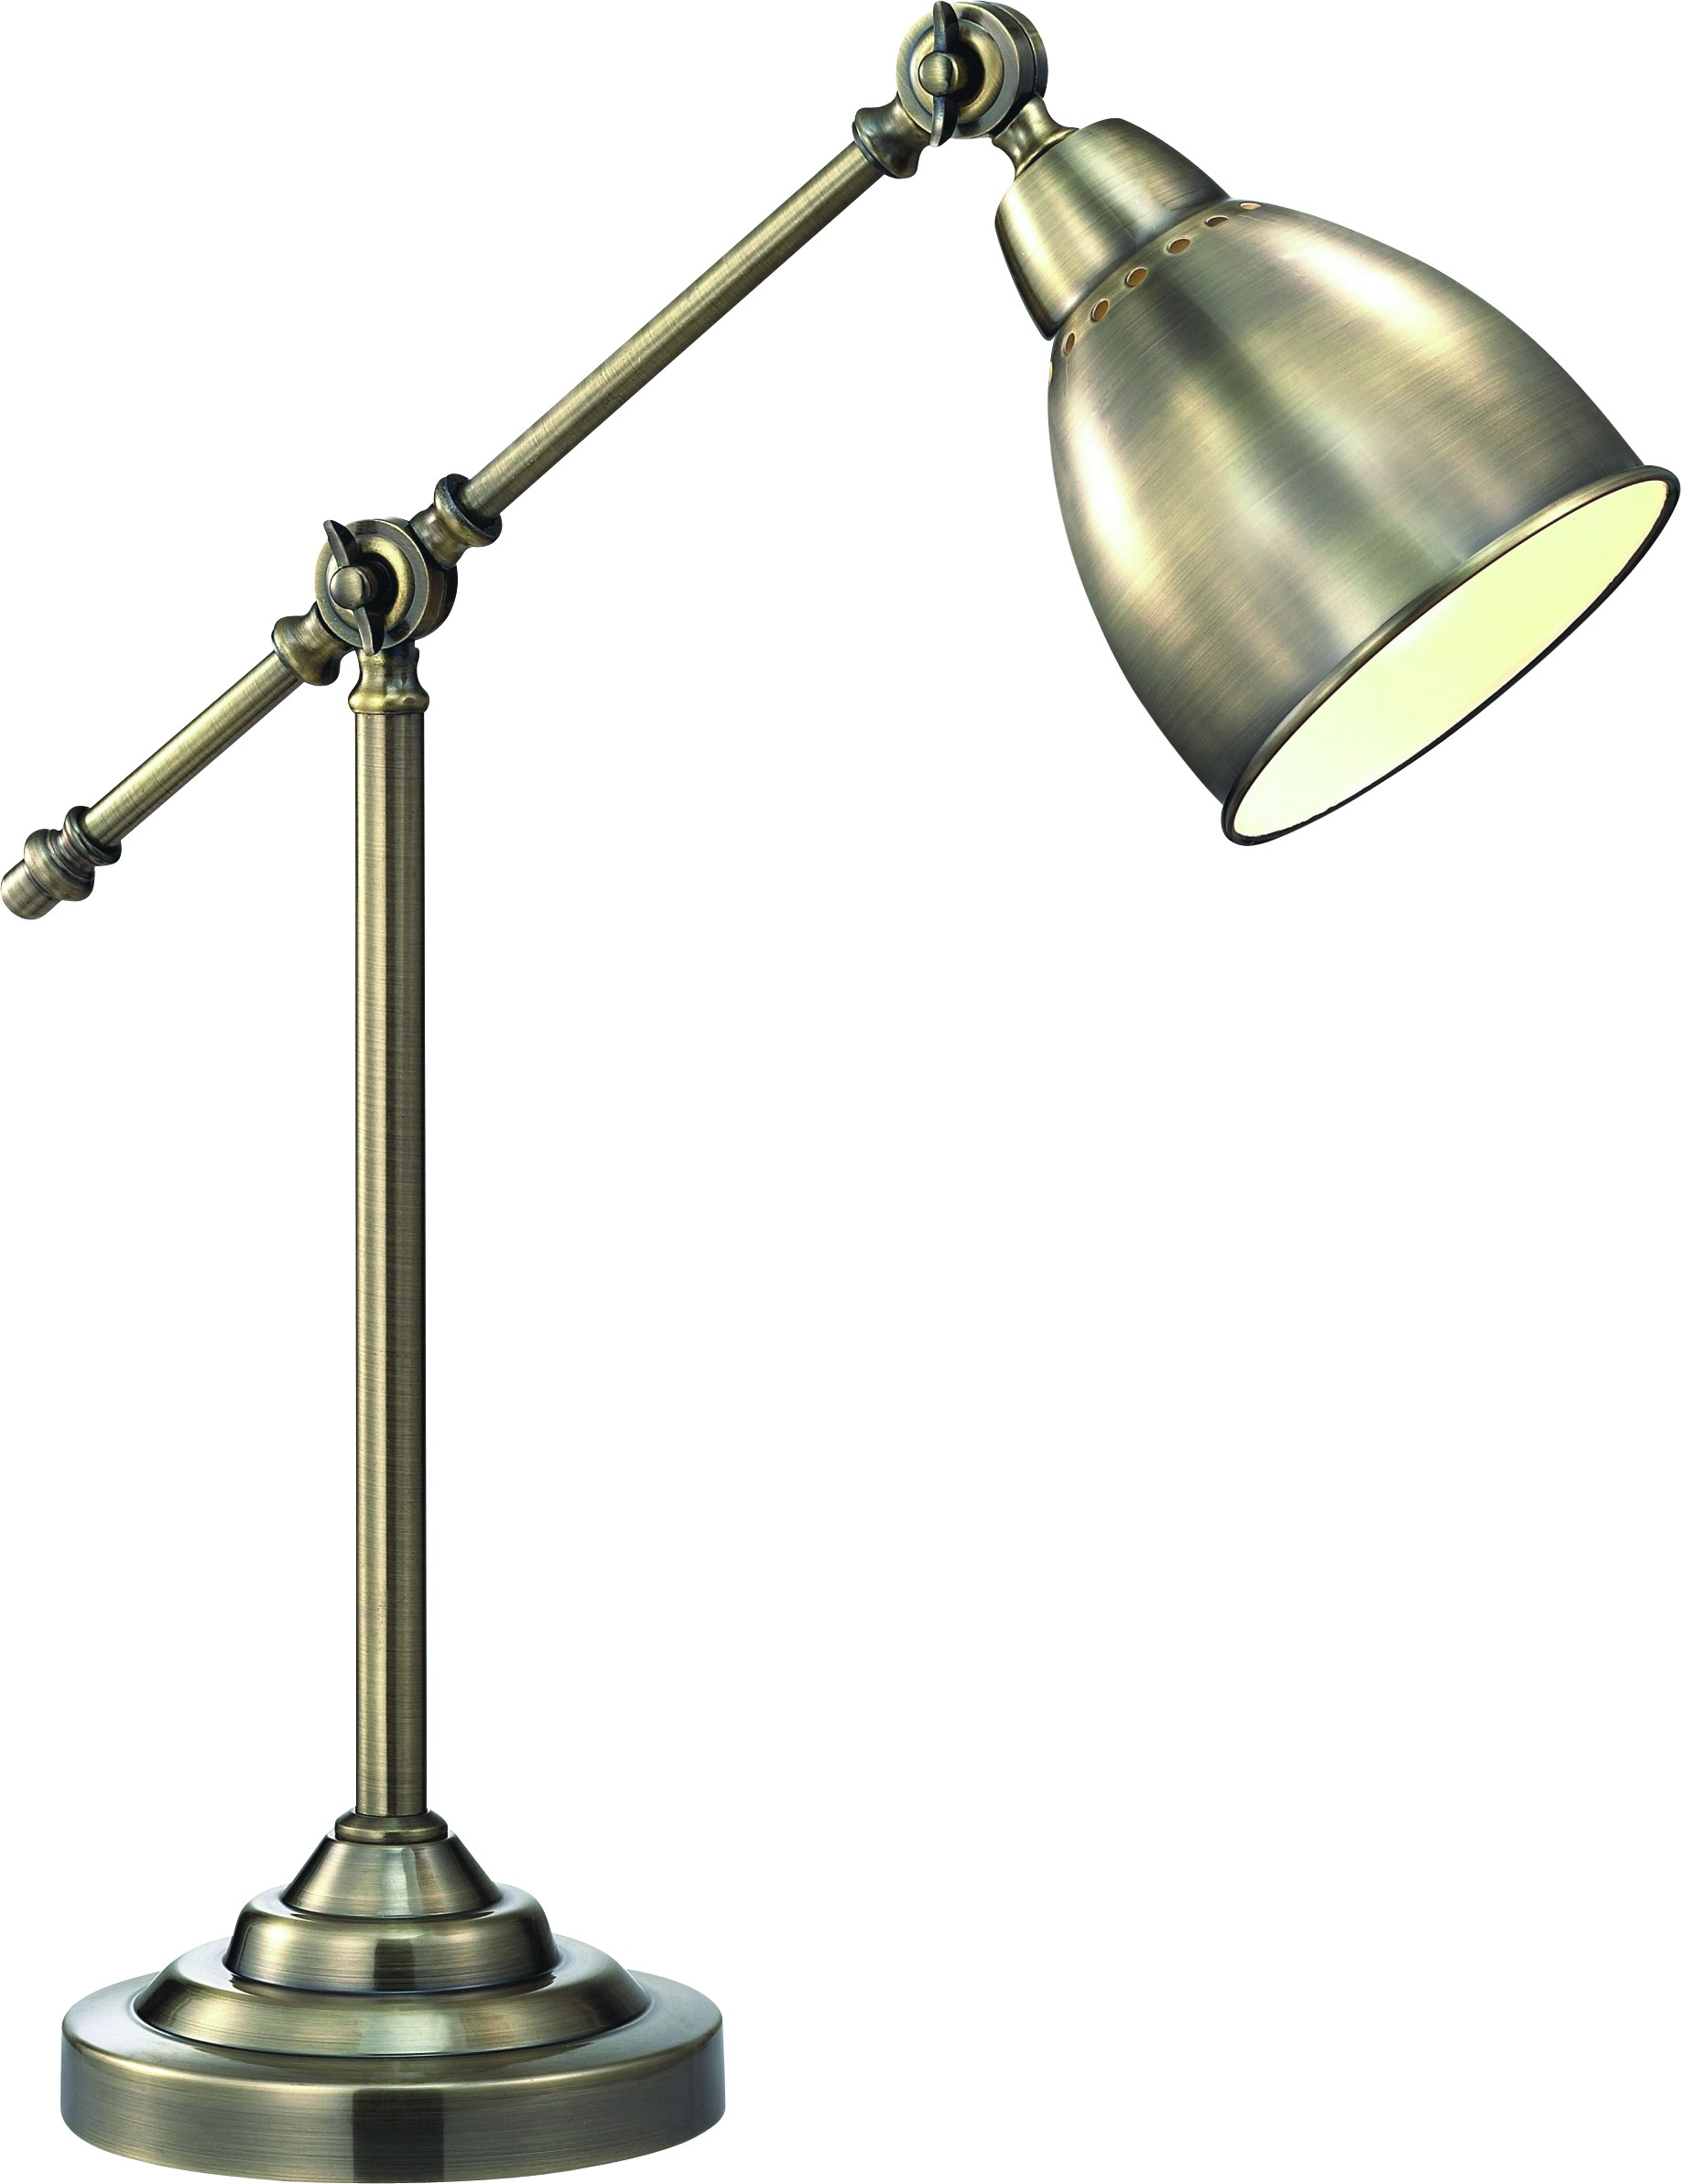 

Лампа настольная Arte lamp A2054lt-1ab, A2054lt-1ab